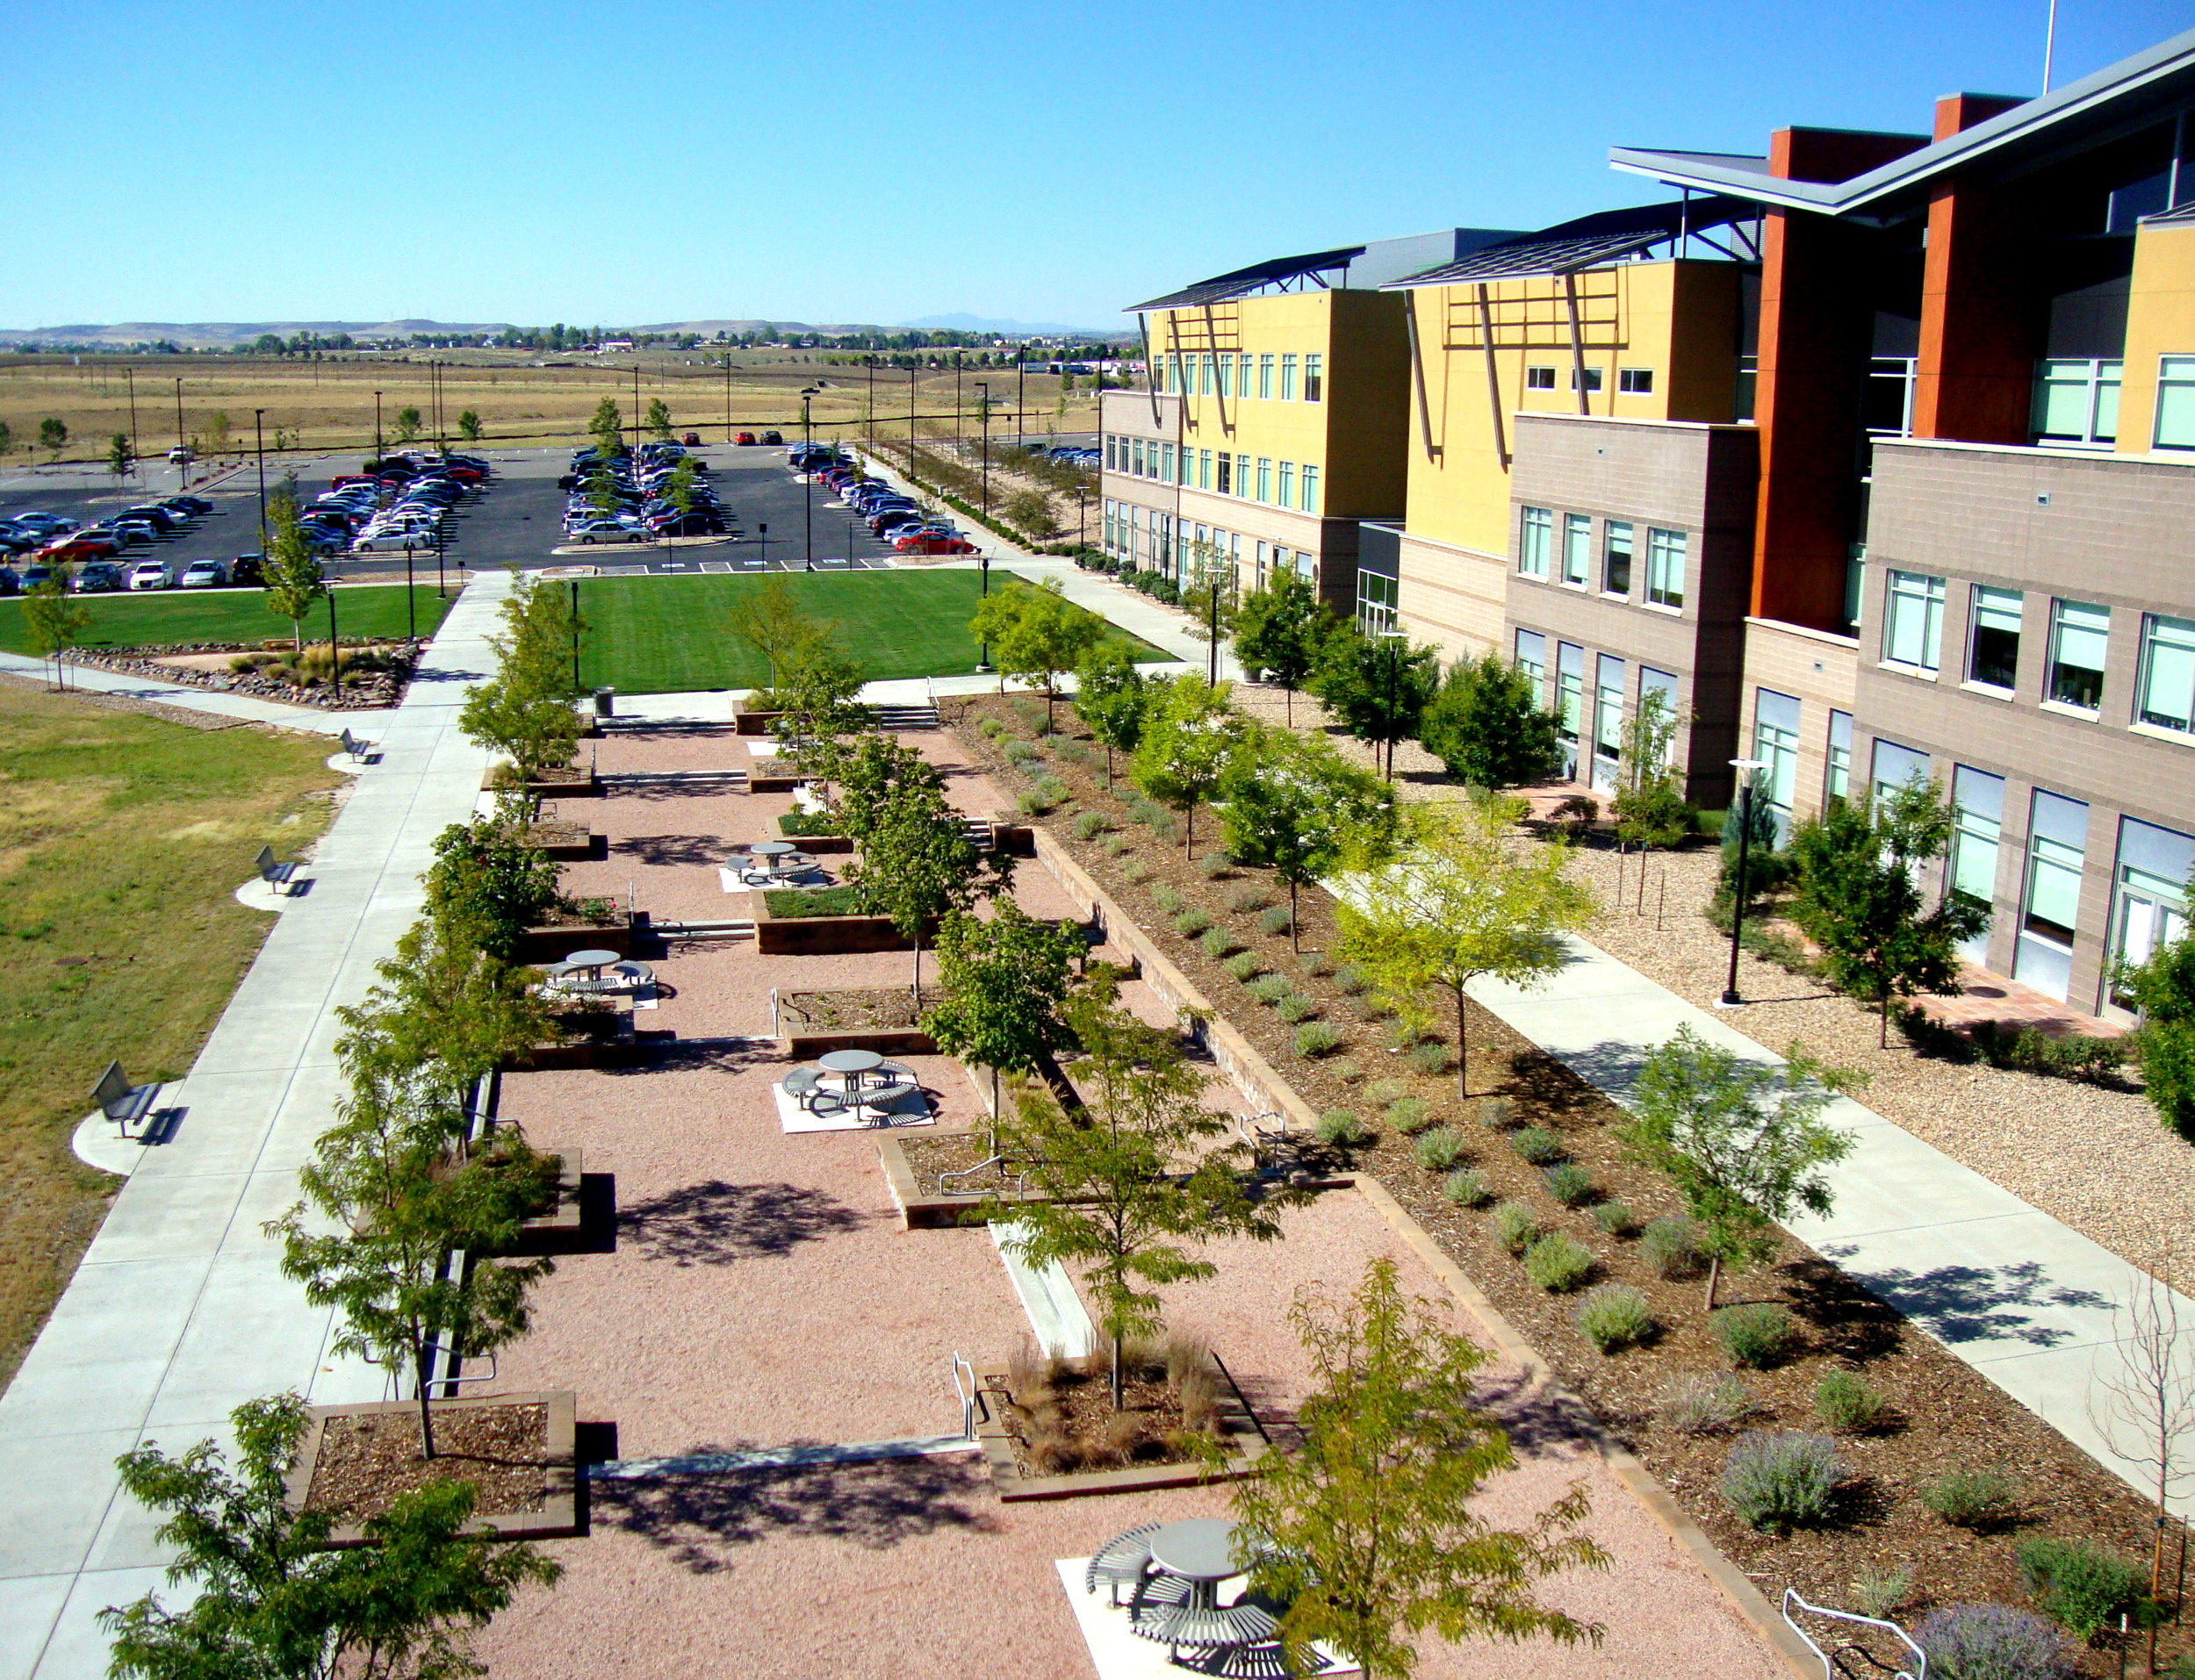 Plan West Rocky Vista University